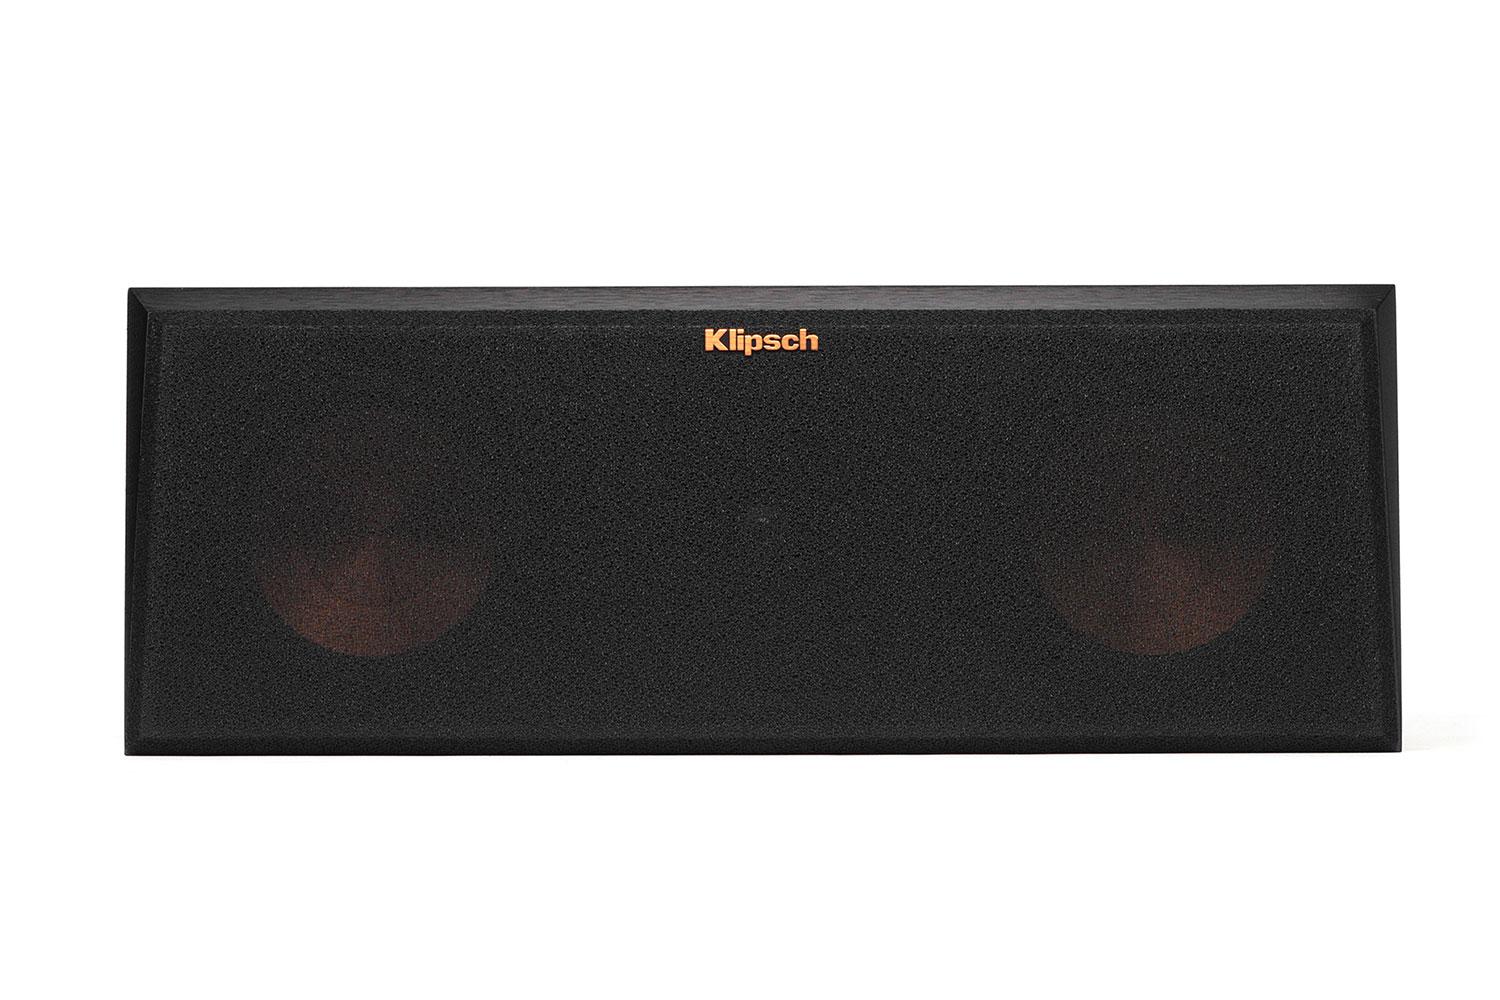 klipsch reference premier speaker system debuts at ces 2015 250c front grille